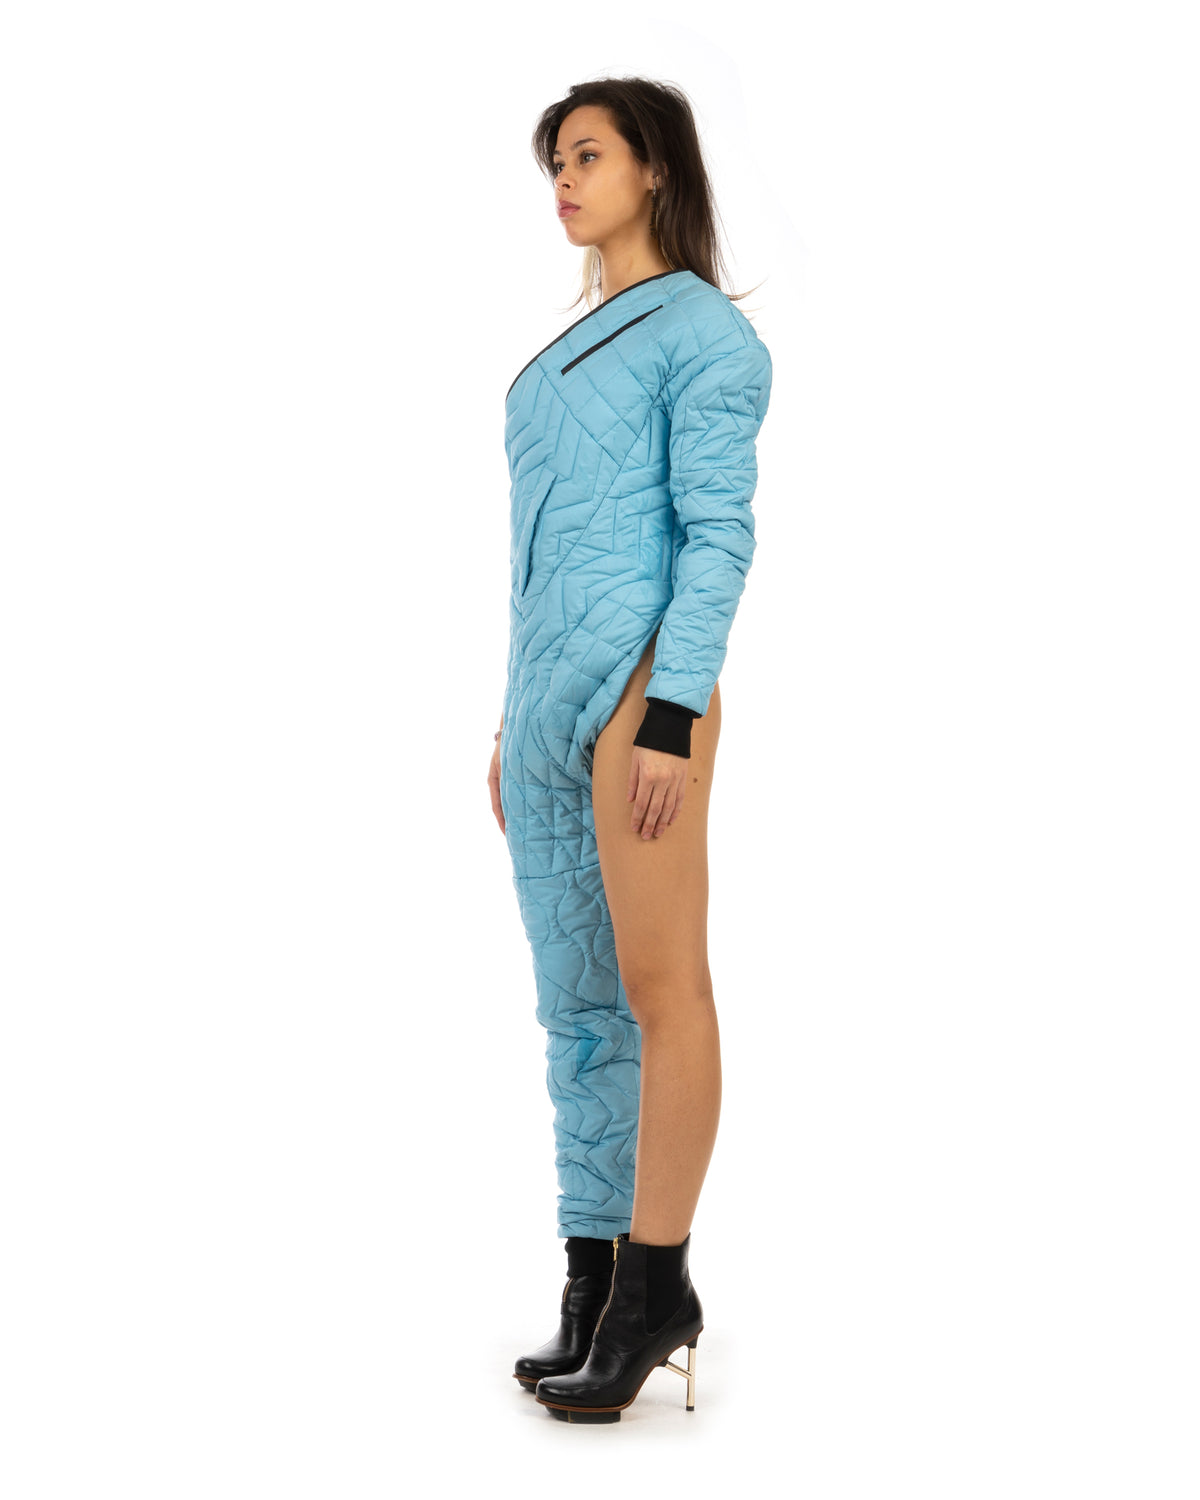 Duran Lantink for Concrete | Quilted Leg Suit Blue - Concrete